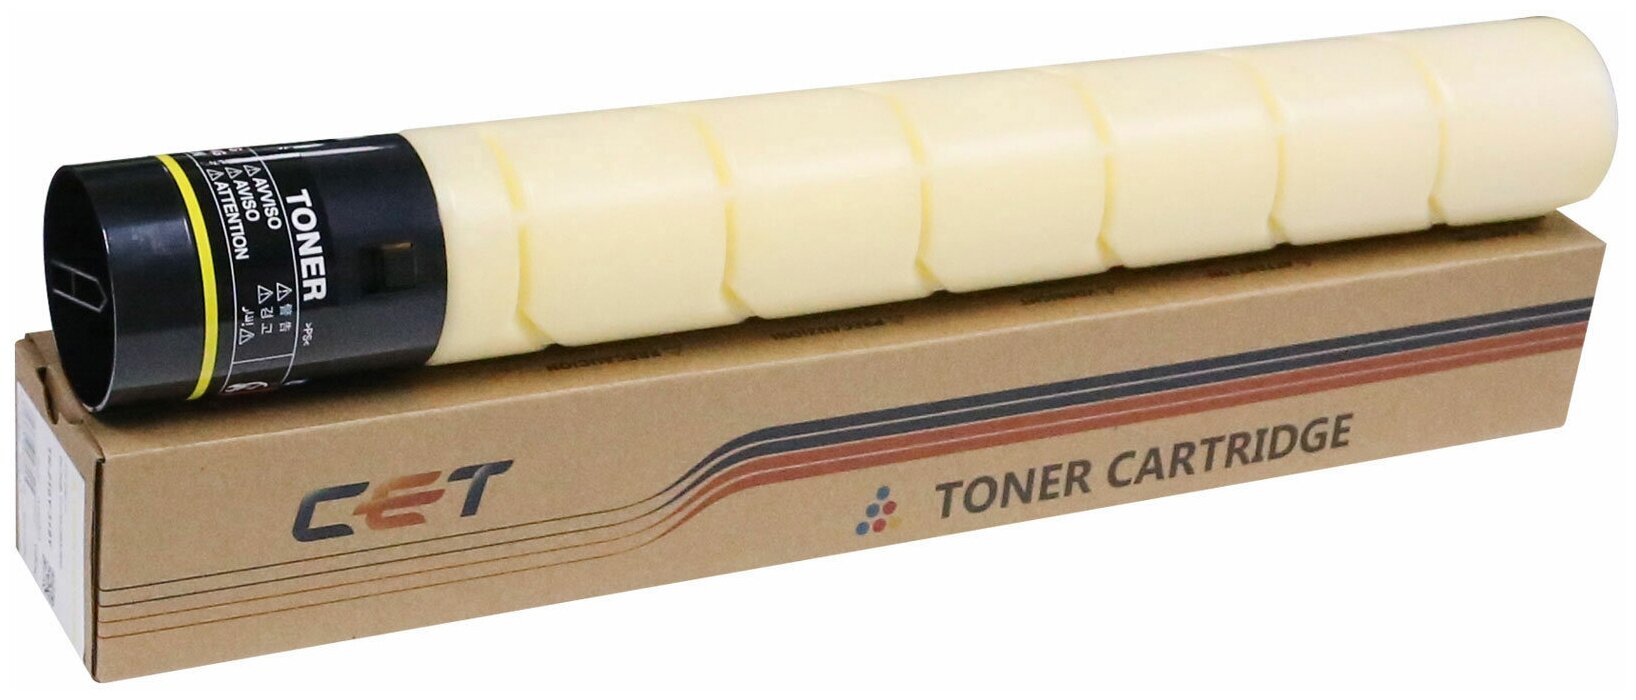 Тонер-картридж CET (NF5) для KONICA MINOLTA Bizhub C220/C280/C360 (аналог TN-216Y/TN-319Y/A11G231/A11G230) (CET) Yellow, 437г, 26000 стр., CET6842